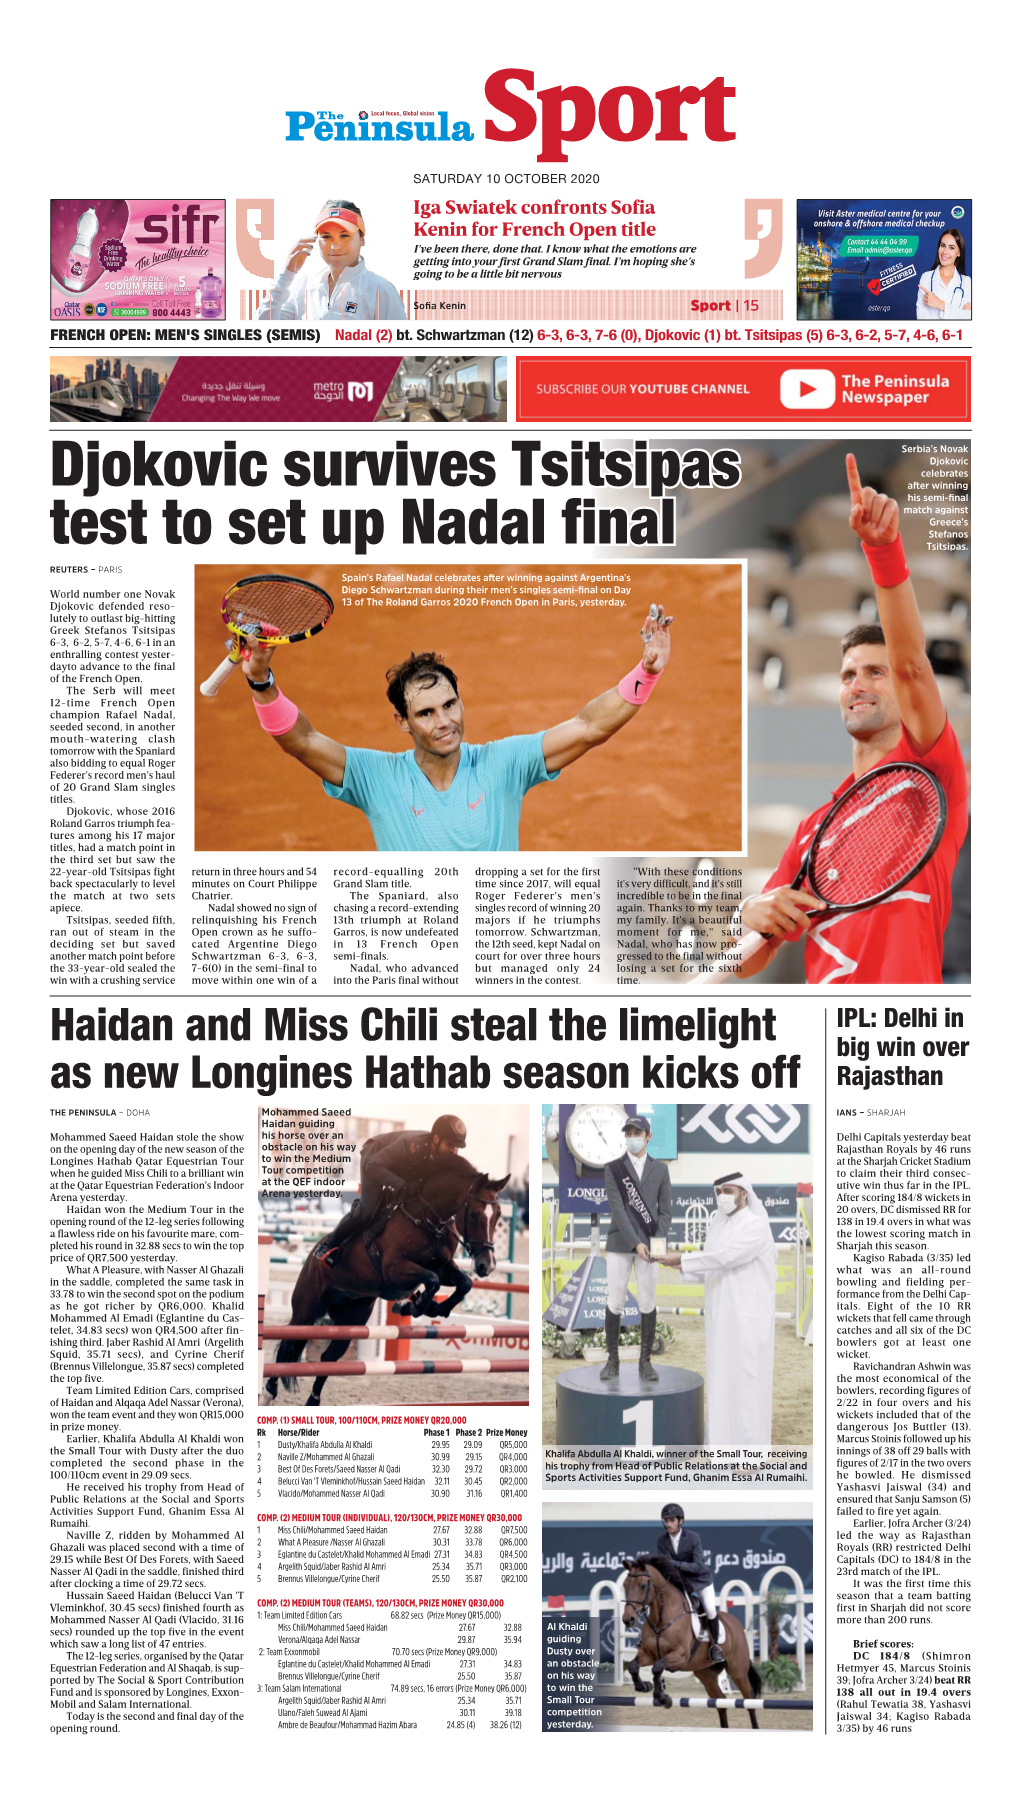 Djokovic Survives Tsitsipas Test to Set up Nadal Final